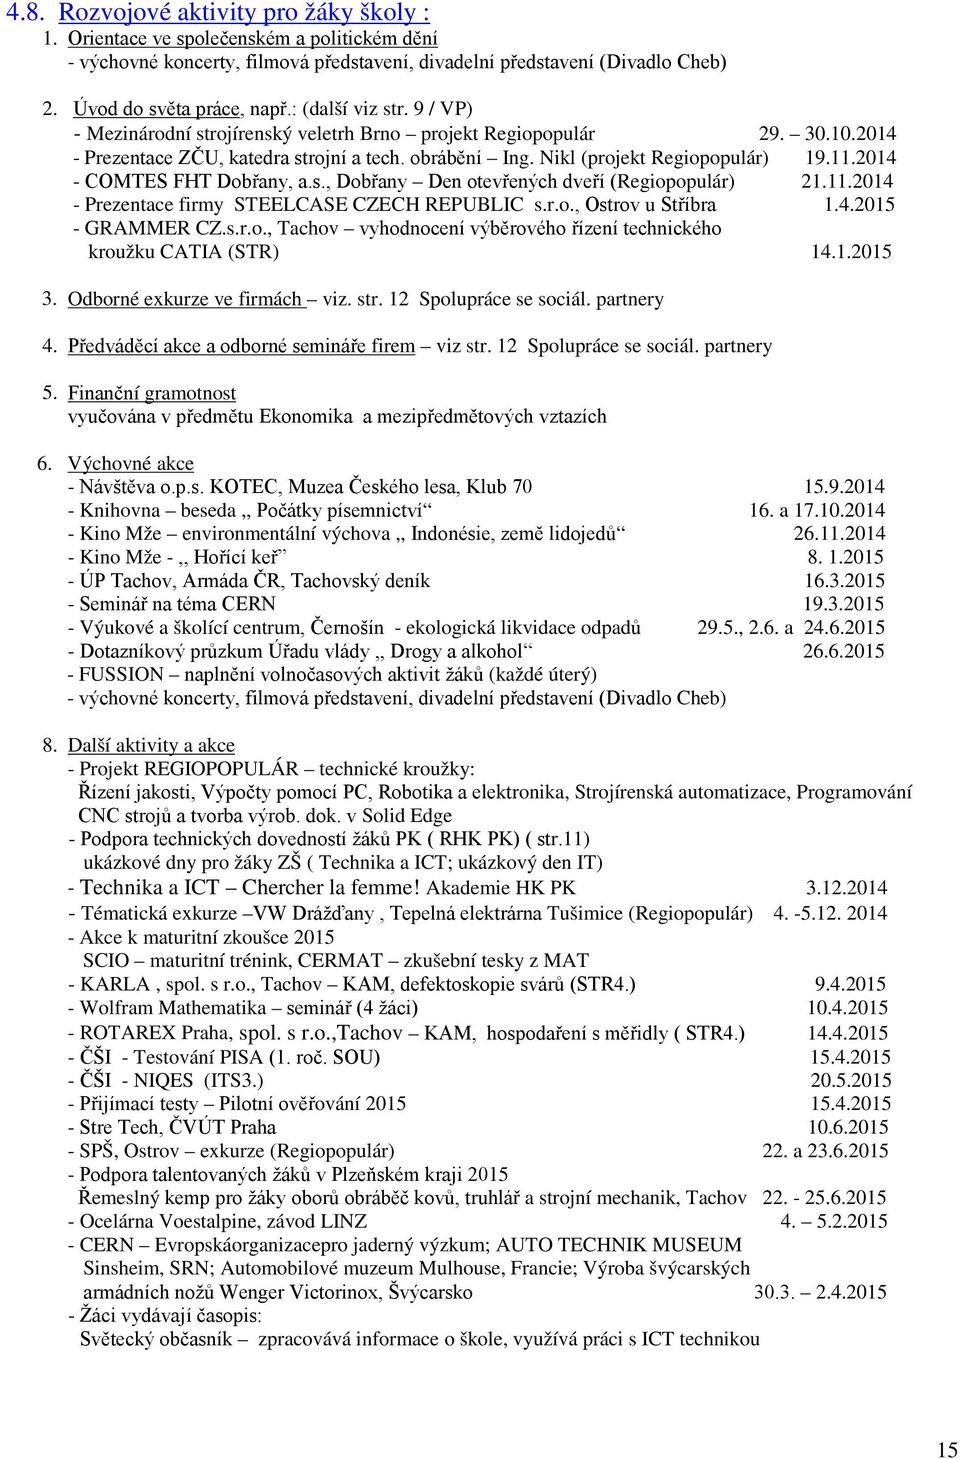 2014 - COMTES FHT Dobřany, a.s., Dobřany Den otevřených dveří (Regiopopulár) 21.11.2014 - Prezentace firmy STEELCASE CZECH REPUBLIC s.r.o., Ostrov u Stříbra 1.4.2015 - GRAMMER CZ.s.r.o., Tachov vyhodnocení výběrového řízení technického kroužku CATIA (STR) 14.